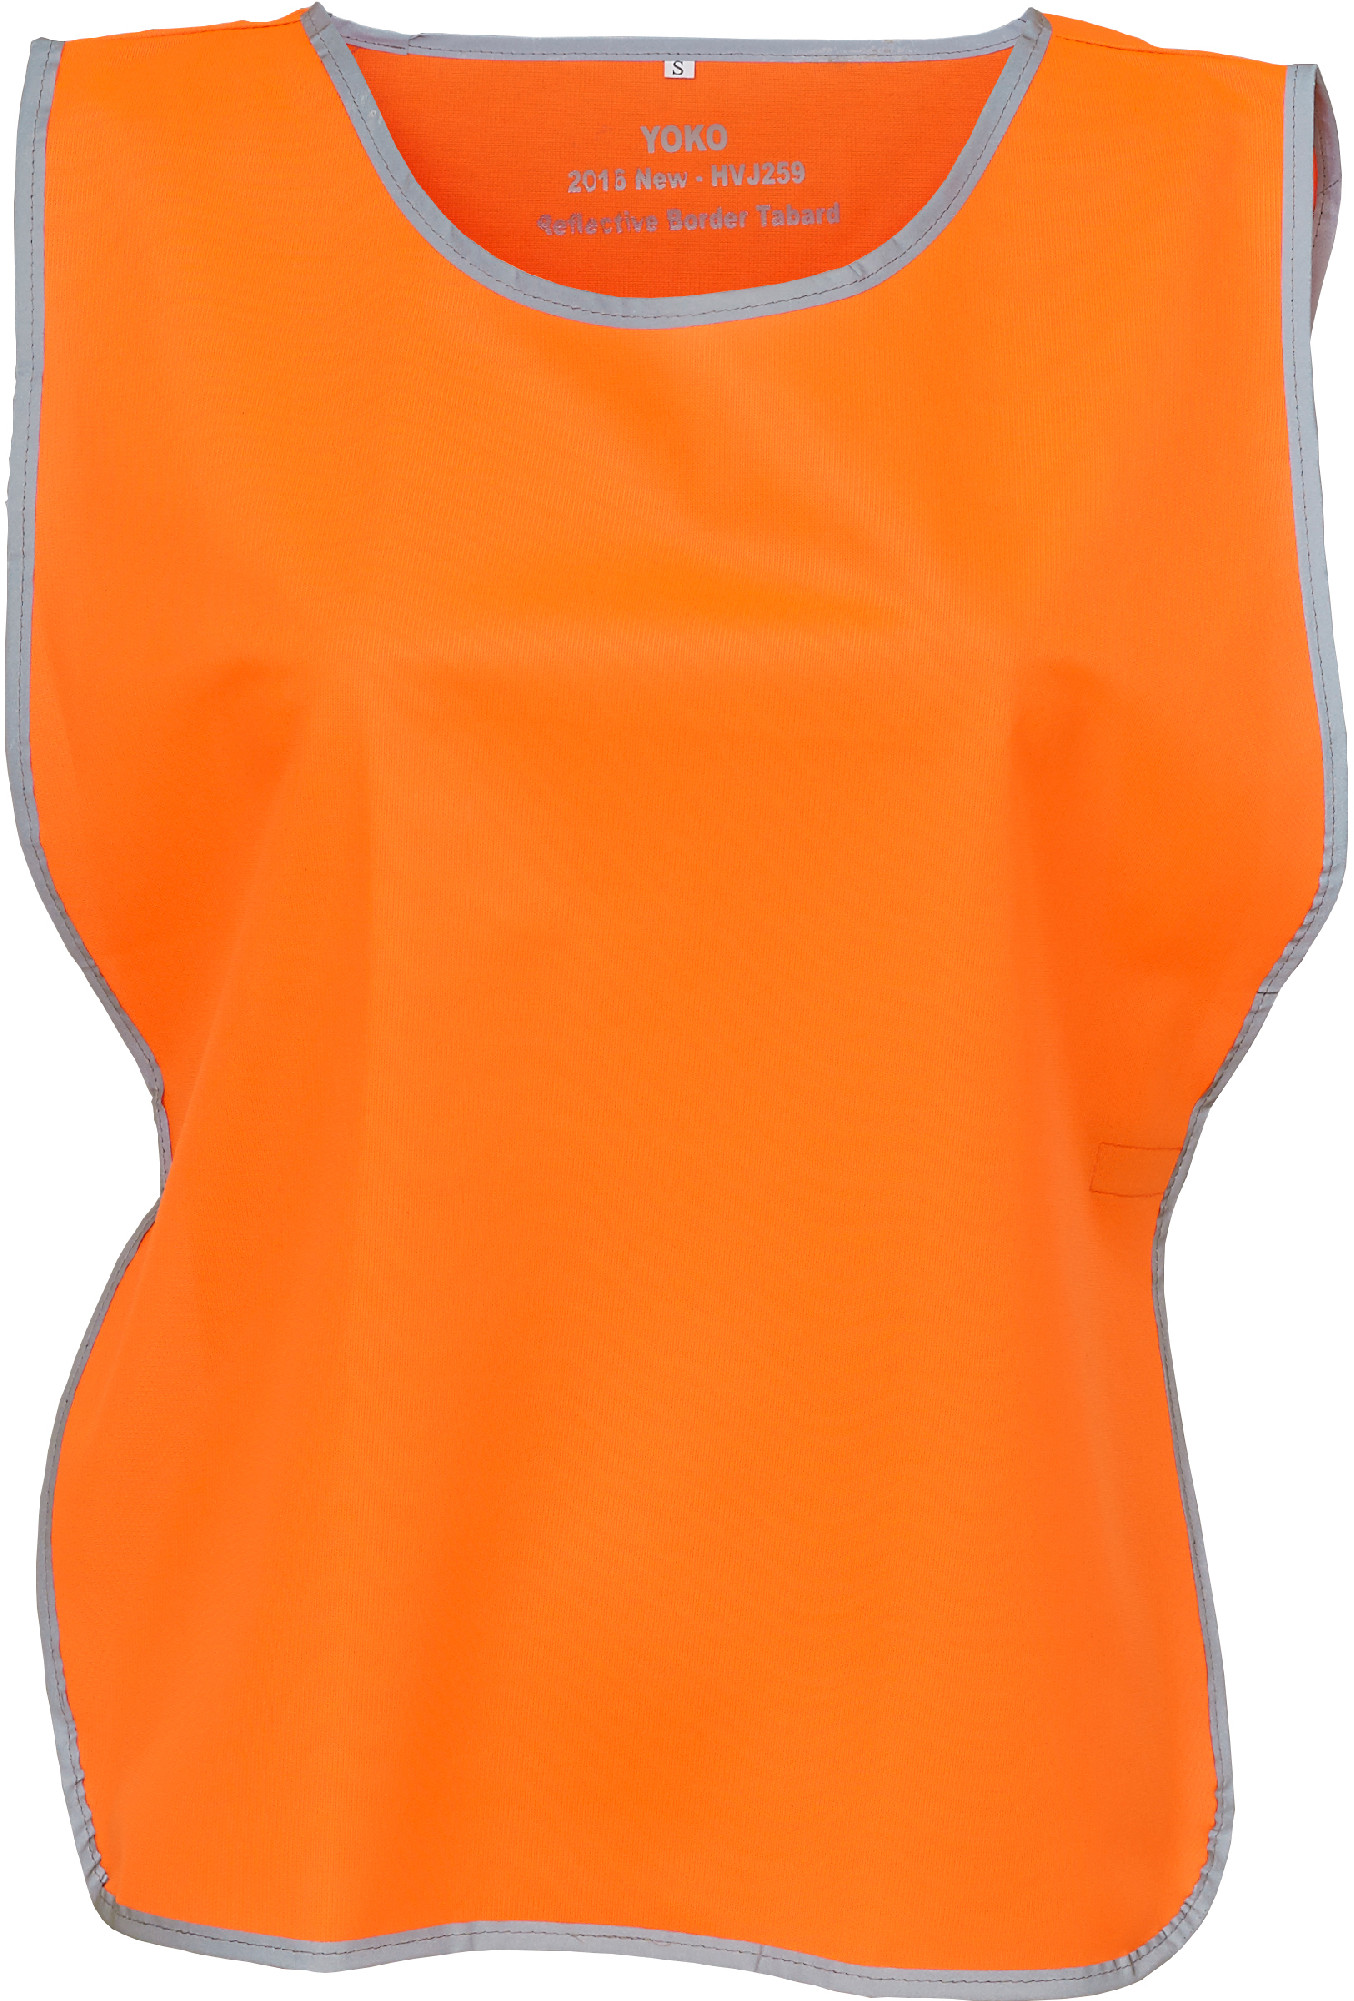 Reflexní vesta Fluo HVJ259 Barva: fluorescenční oranžová, Velikost: XS